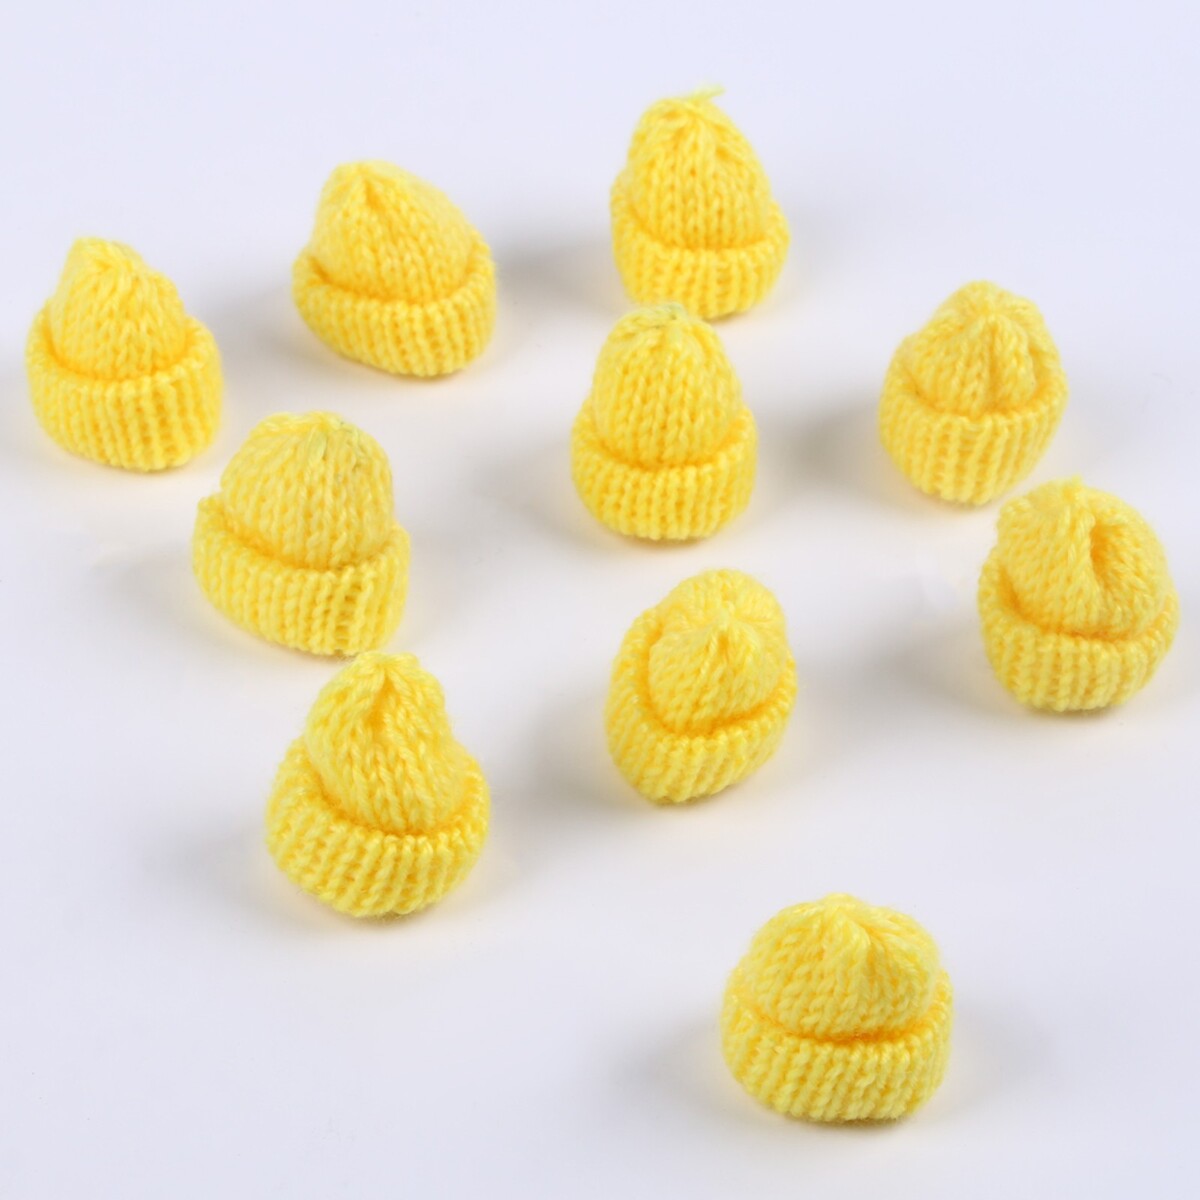 Шапка для игрушек вязаная, набор 10 шт., цвет желтый, размер 1 шт. — 3 × 4 см шапка для игрушек вязаная набор 10 шт желтый размер 1 шт 3 × 4 см